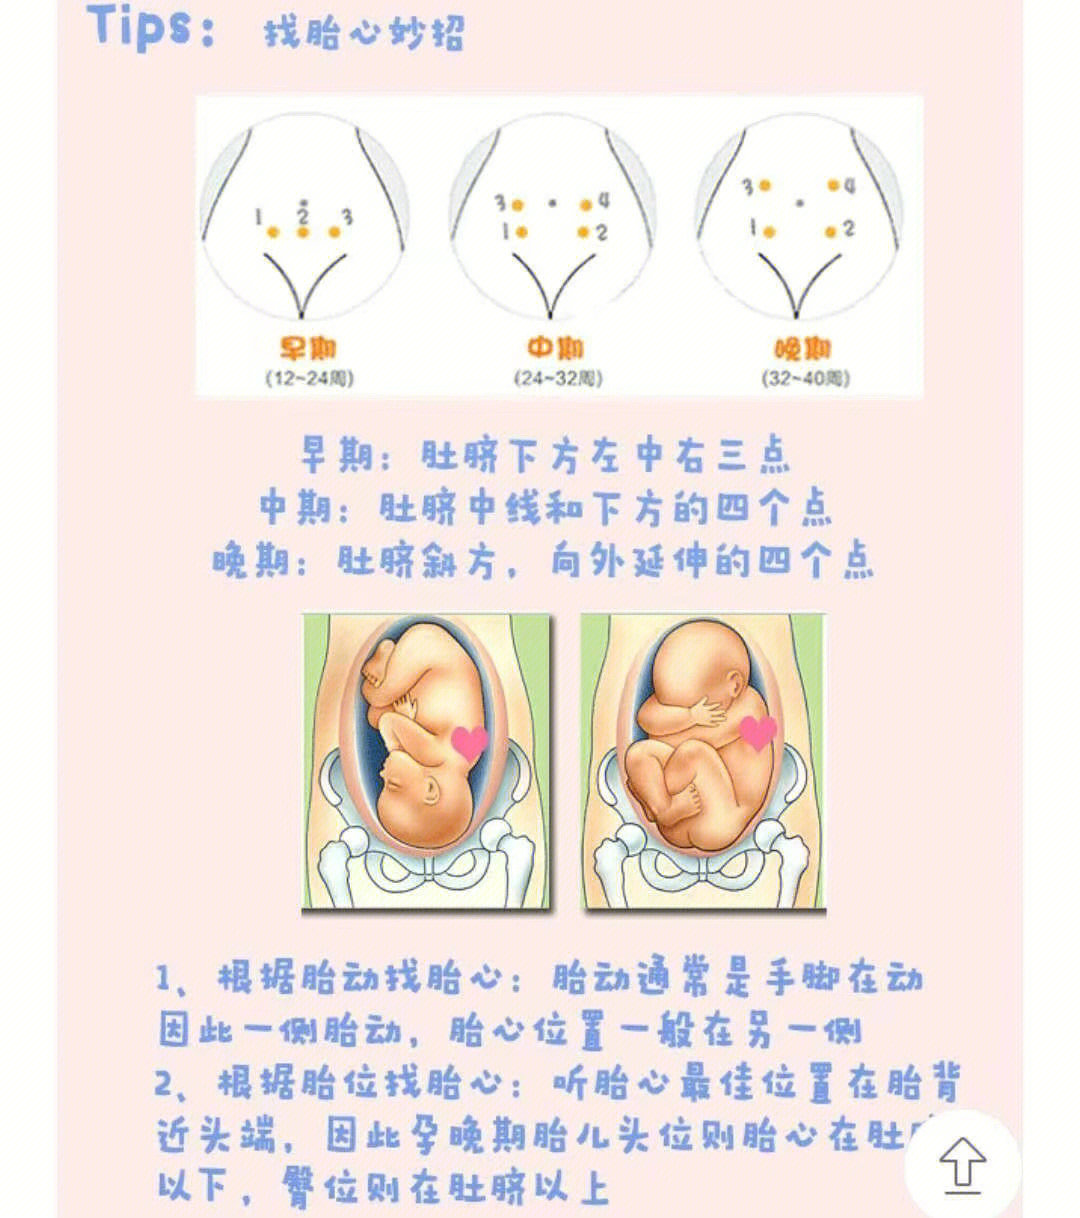 孕晚期胎心位置示意图图片